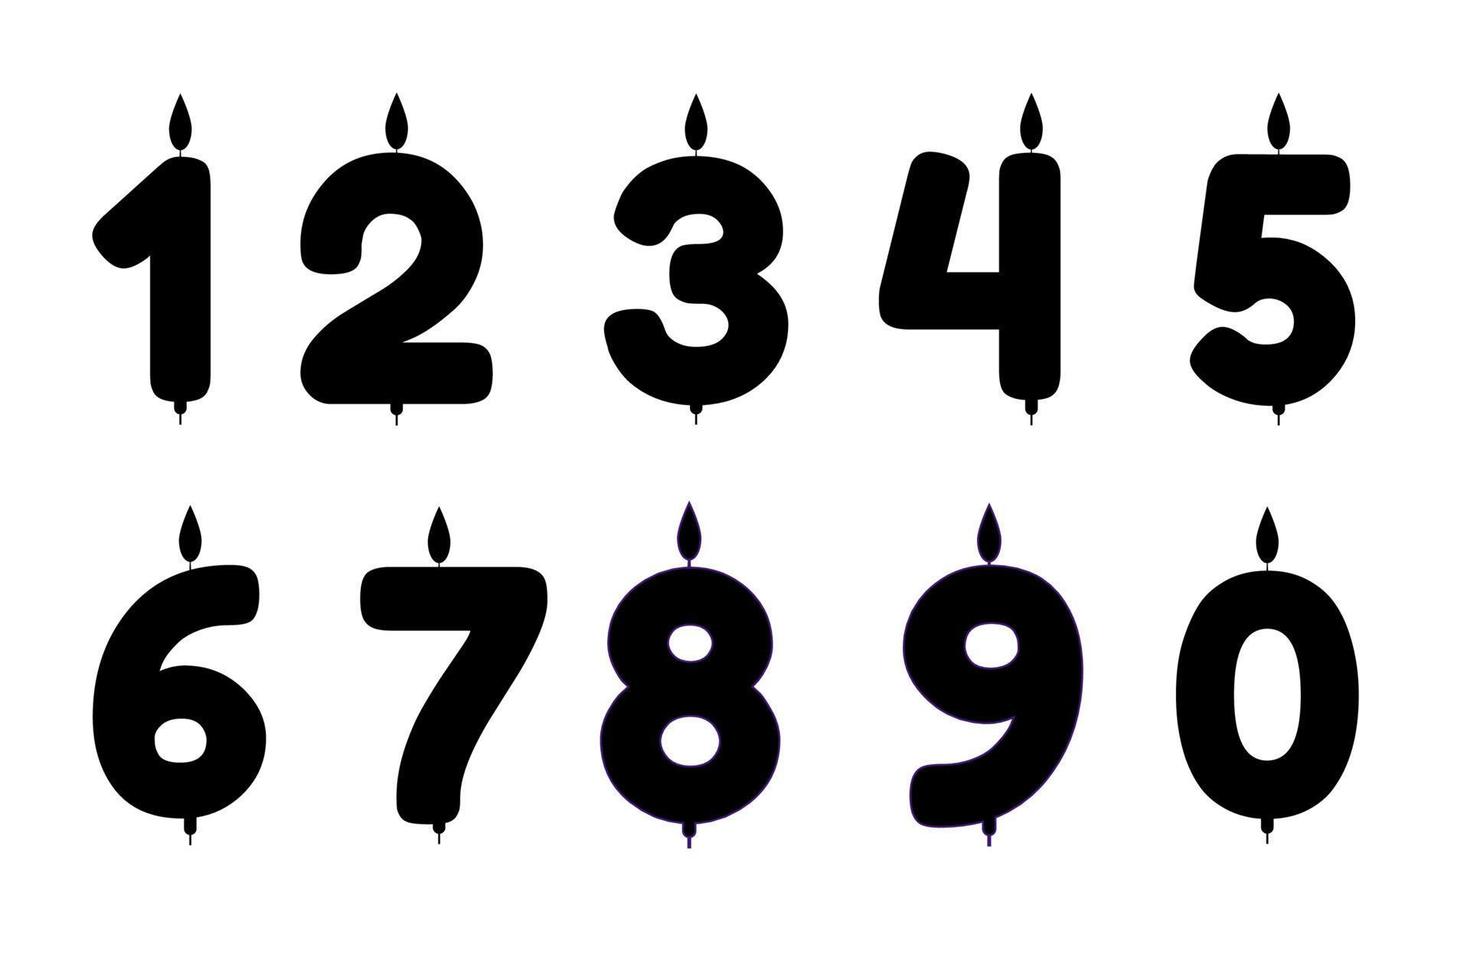 silueta de vela para un pastel con el número de edades. ilustración vectorial vector